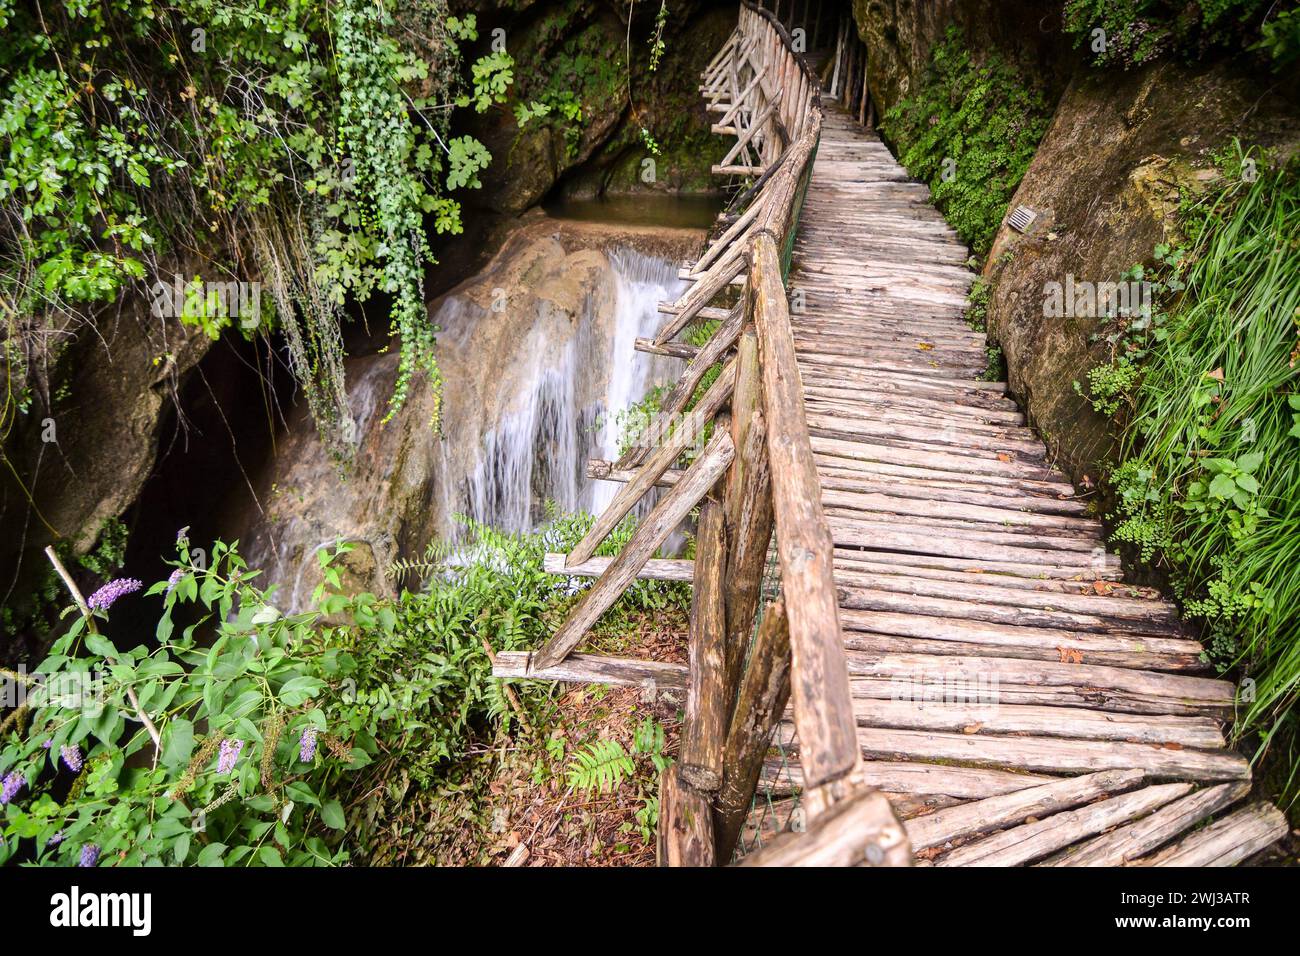 Pathway Wooden Footbridge, Wood Bridge in the jungle Stock Photo